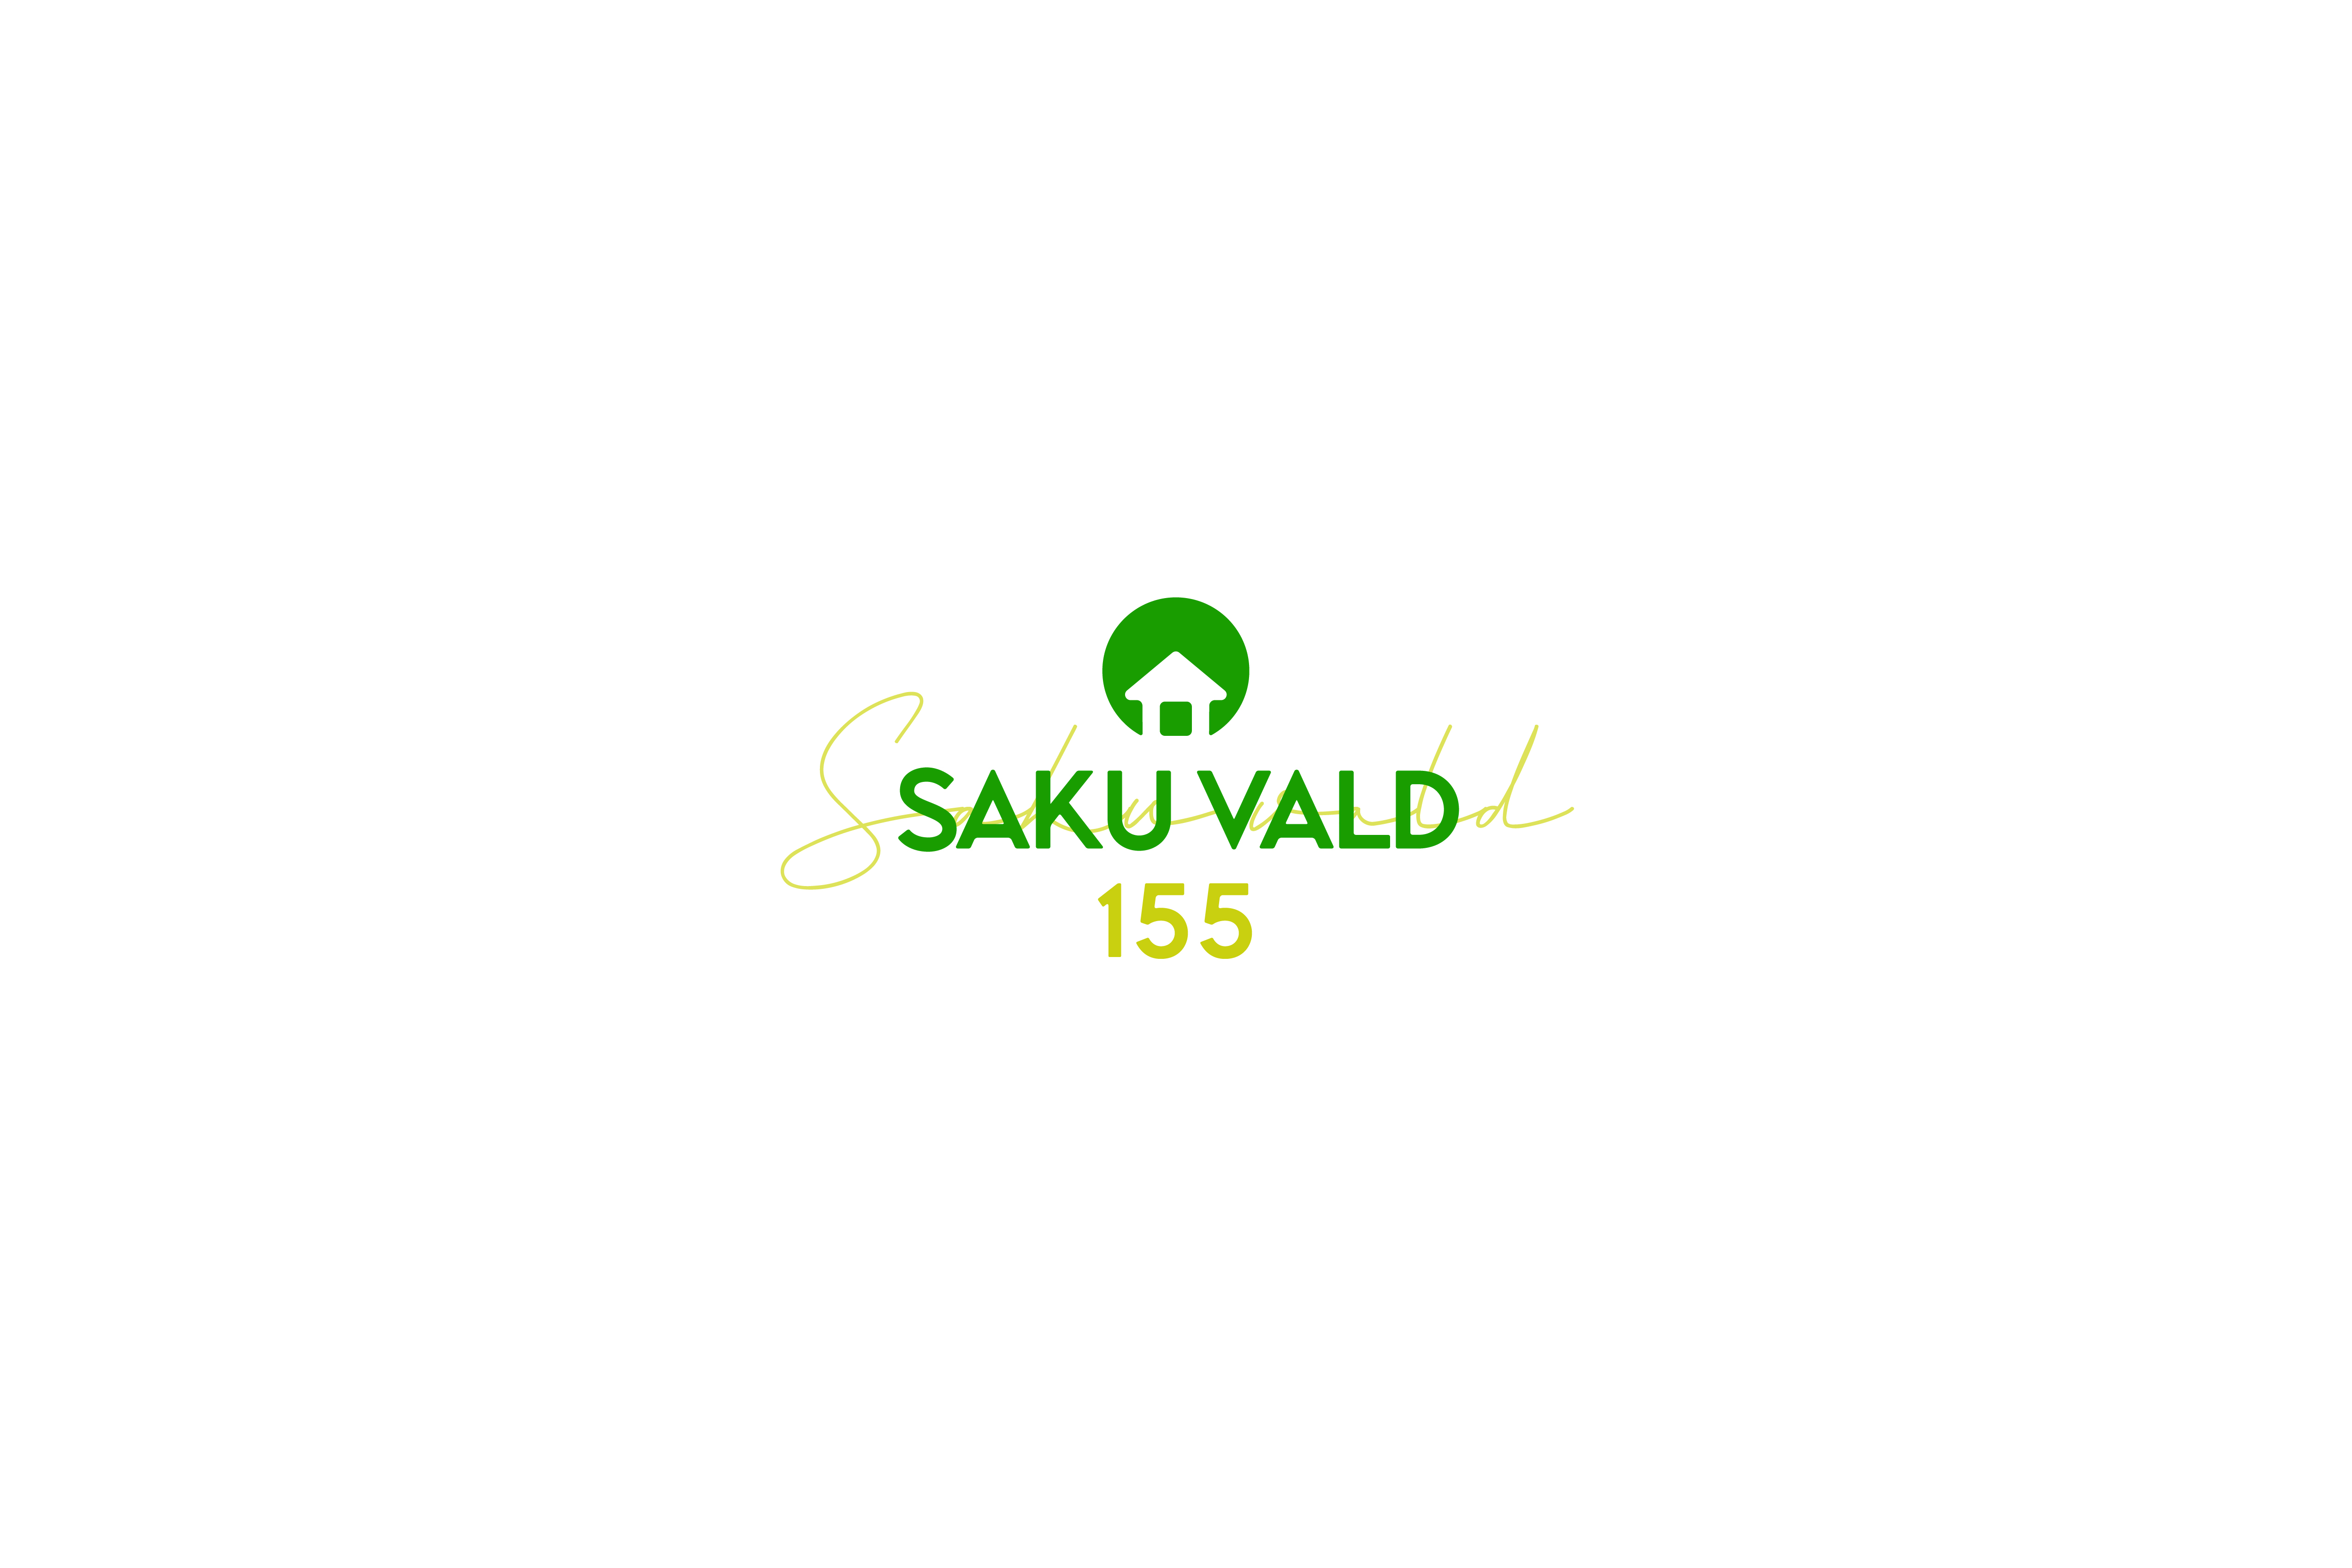 saku-vald-155-logo_0.jpg